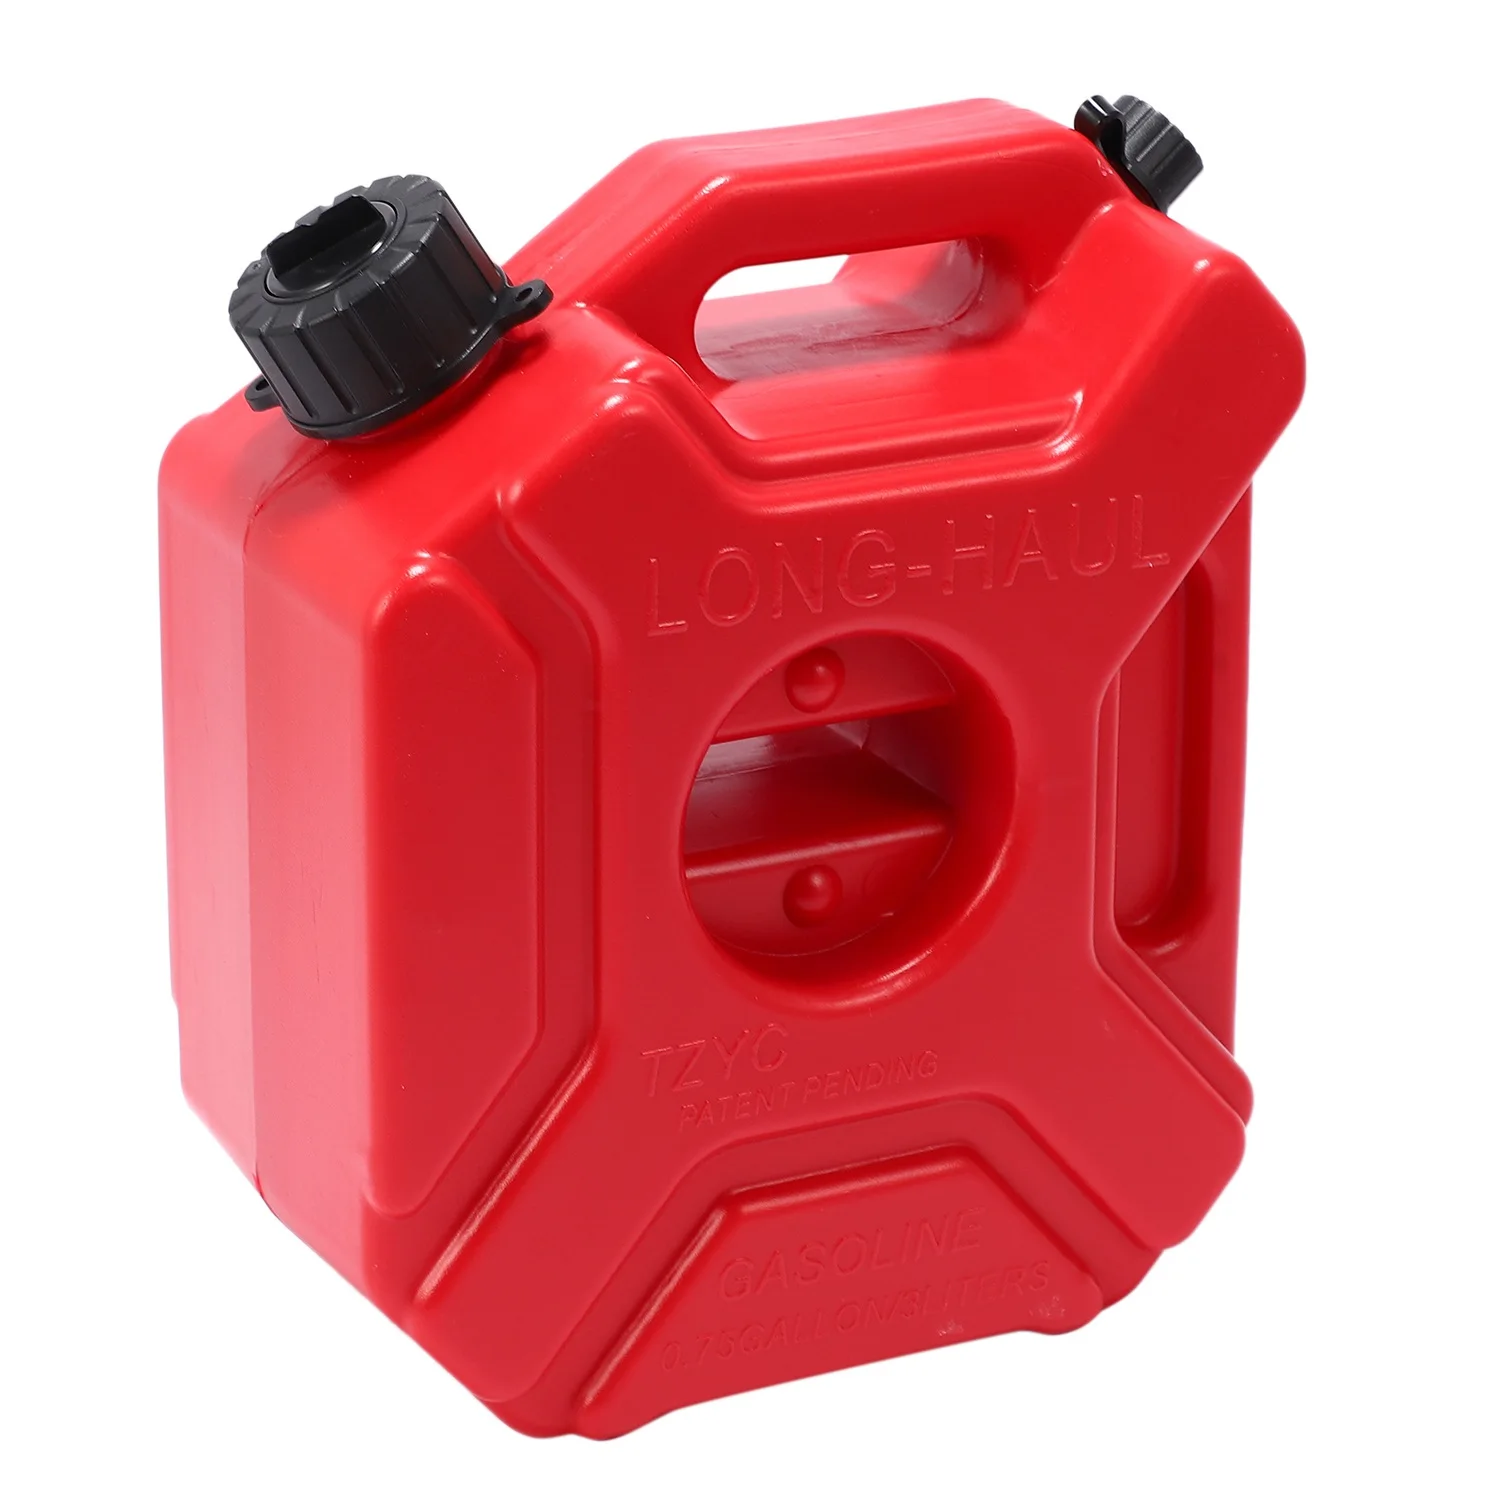 

Резервный топливный бак для мотоцикла красный 3 л пластиковый бензиновый автомобильный запасной контейнер бензиновые баки канистра ATV UTV